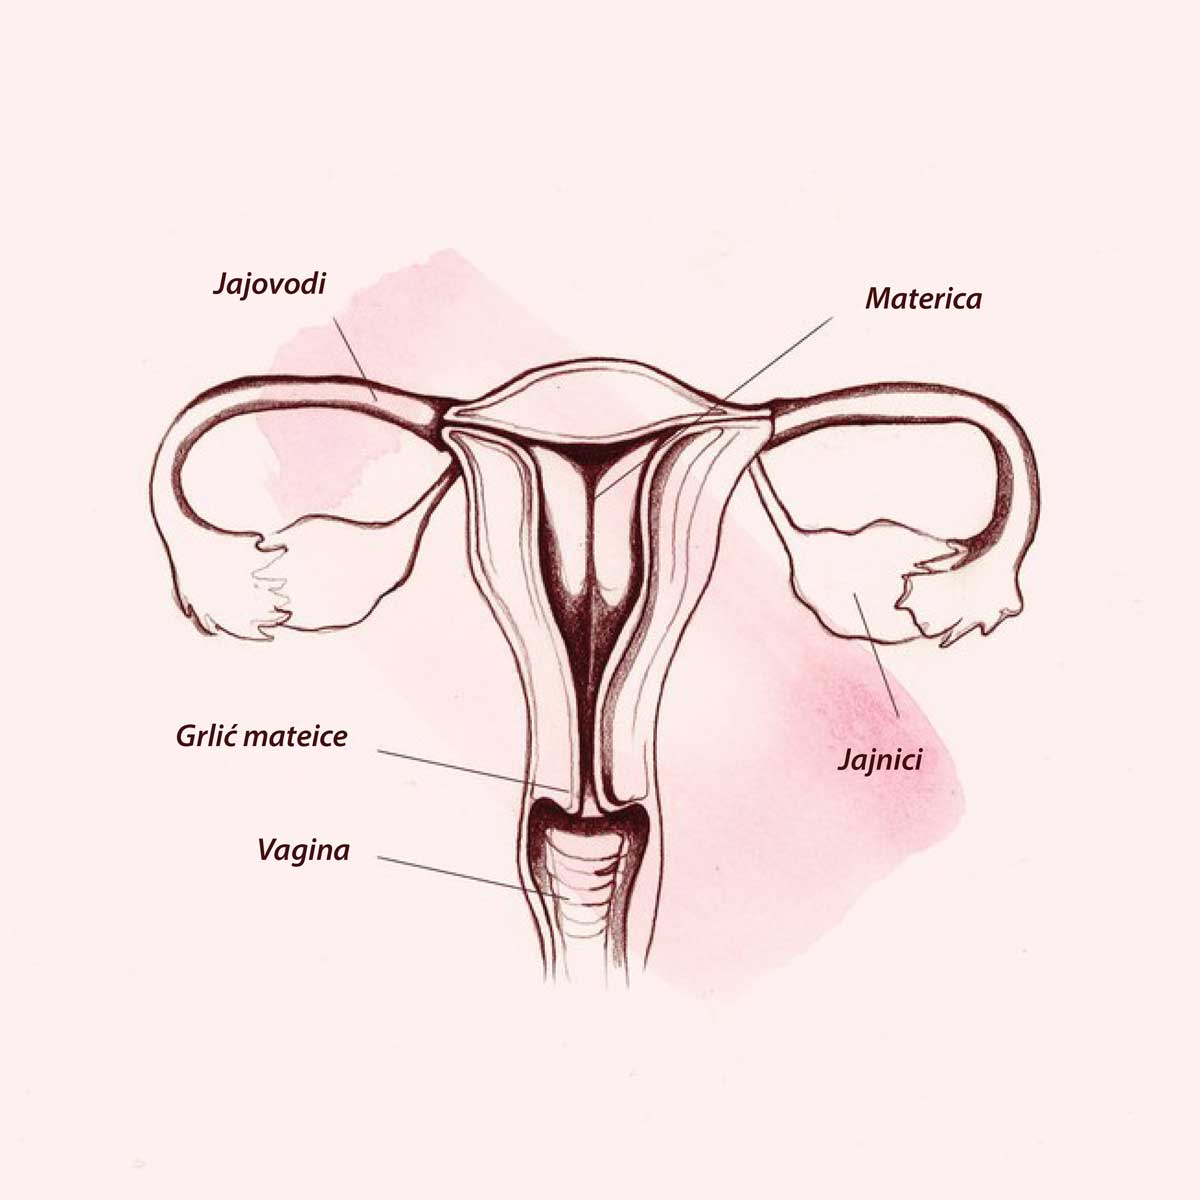 Šta je tačno vagina?